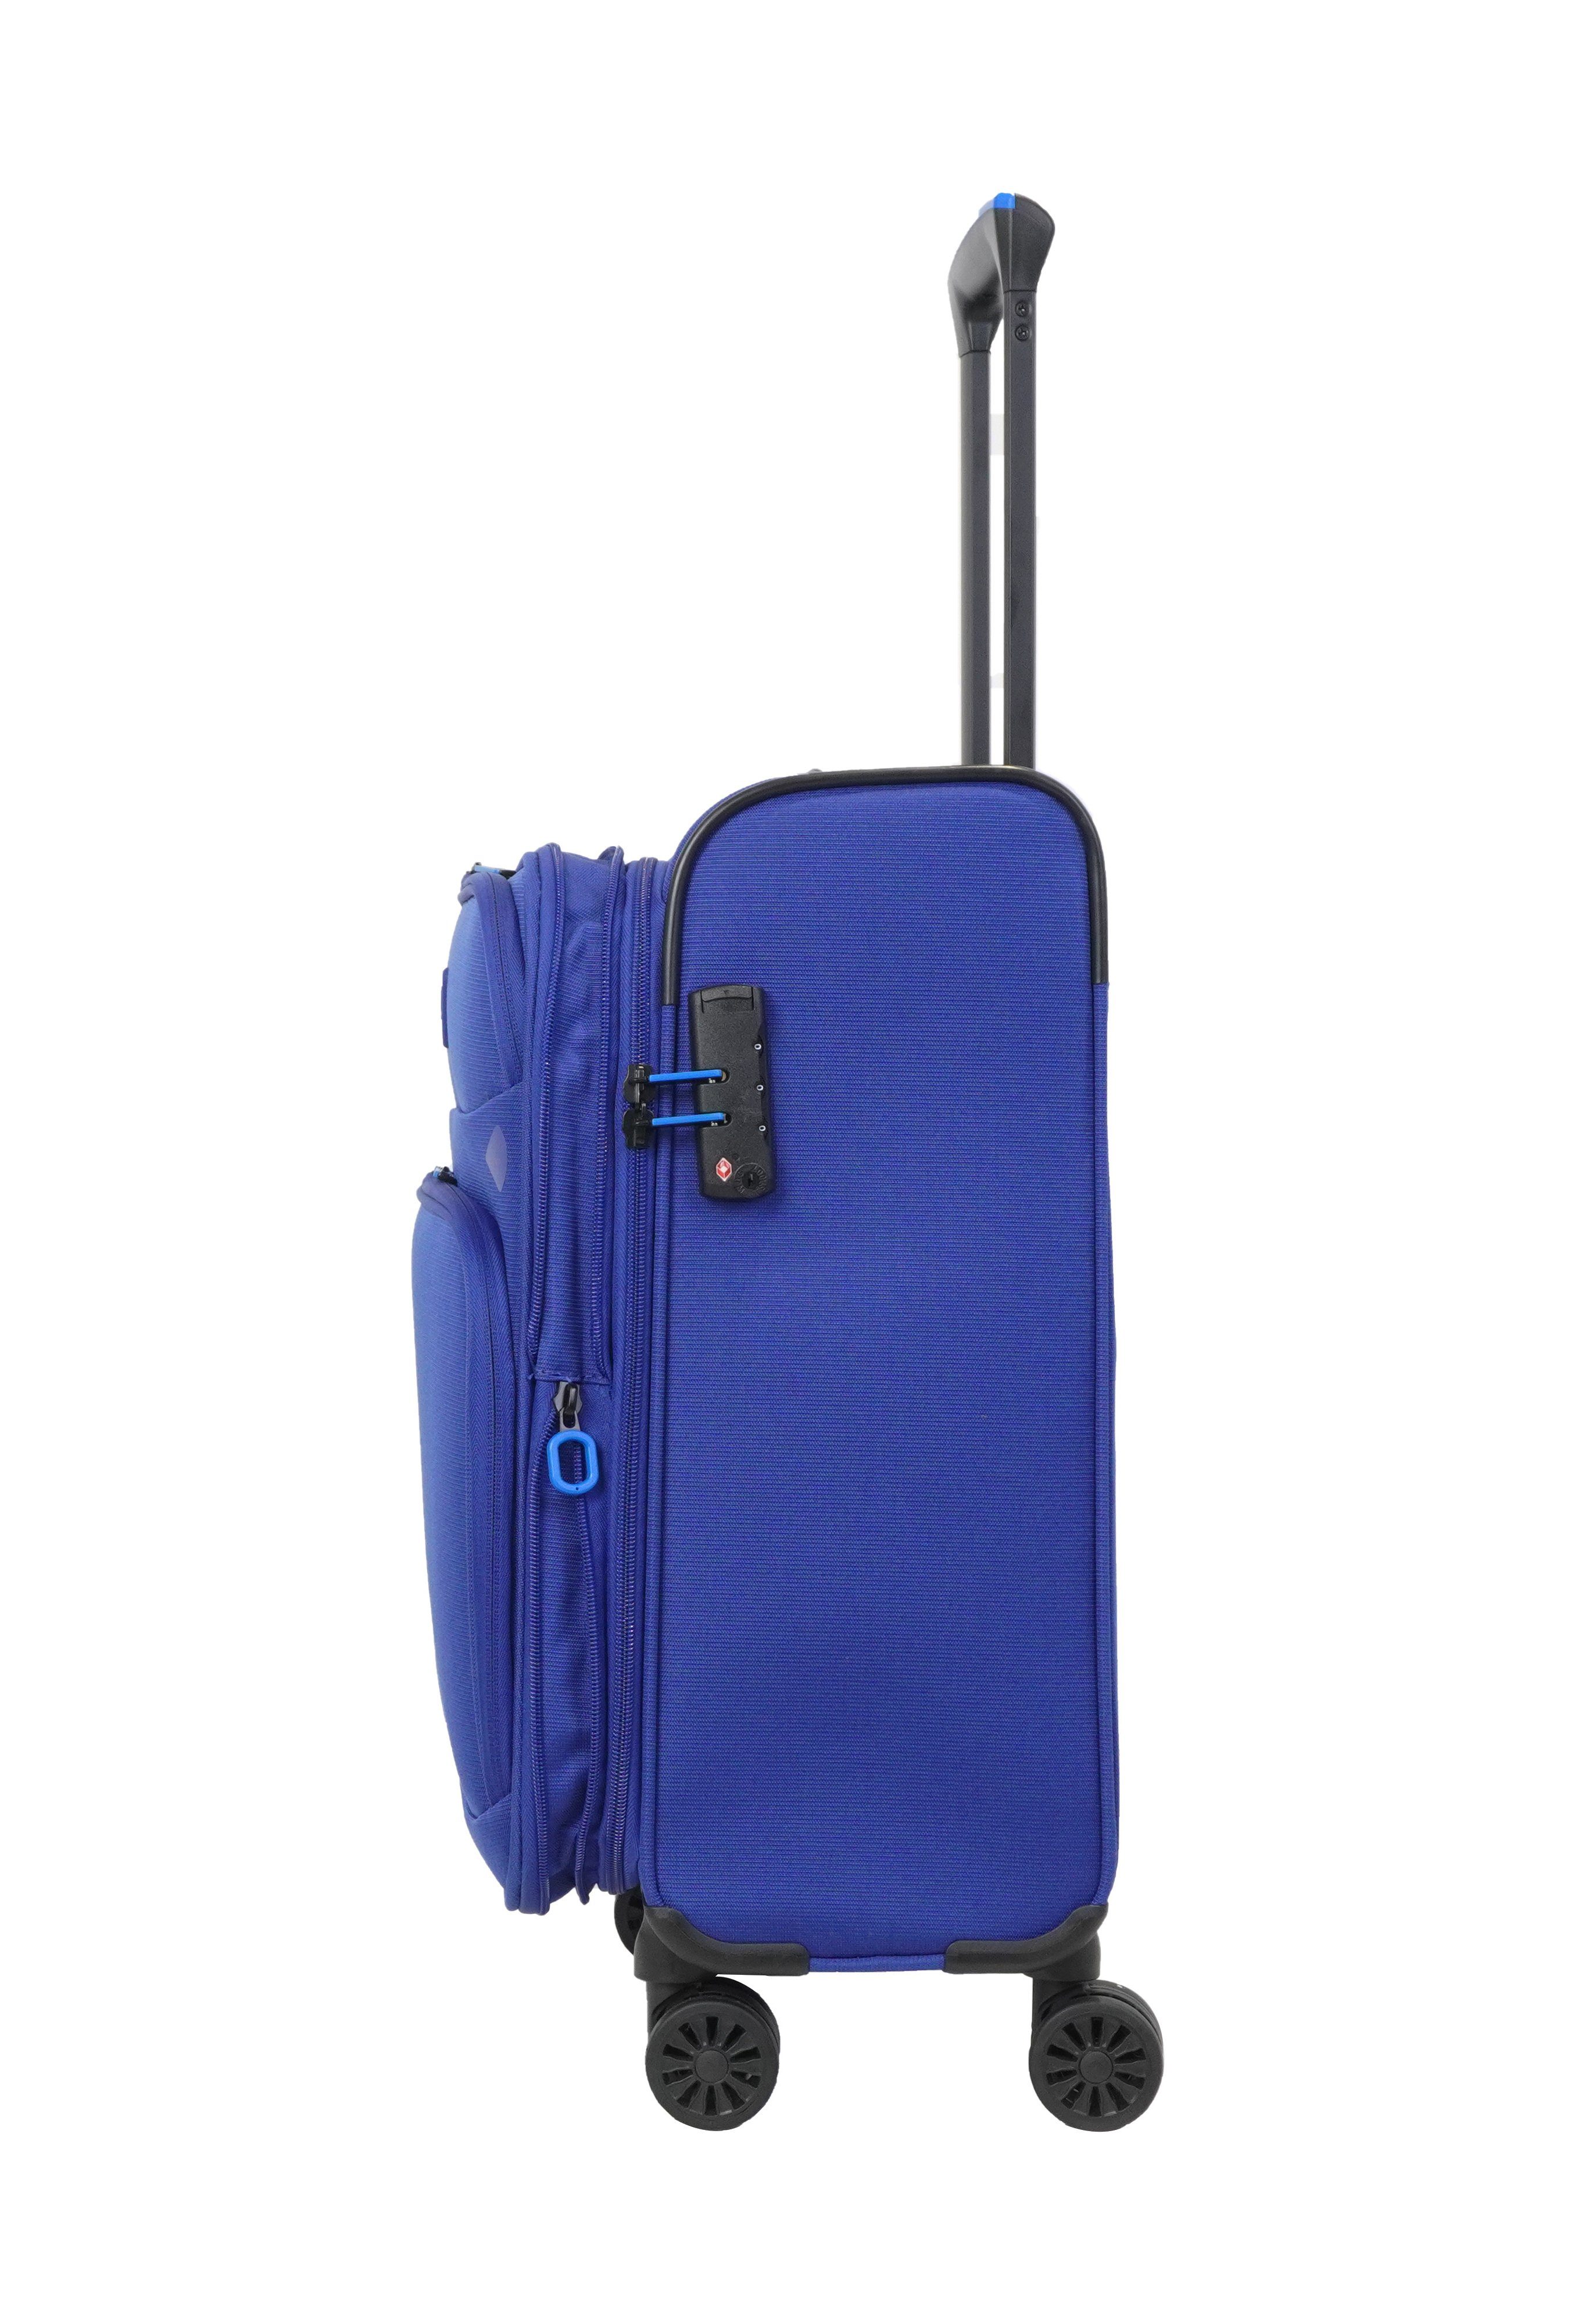 Verage Weichgepäck-Trolley Breeze, 4 Reisekoffer, Rollen, Blau-Violet TSA-Zahlenschloss, erweiterbar, schwarz